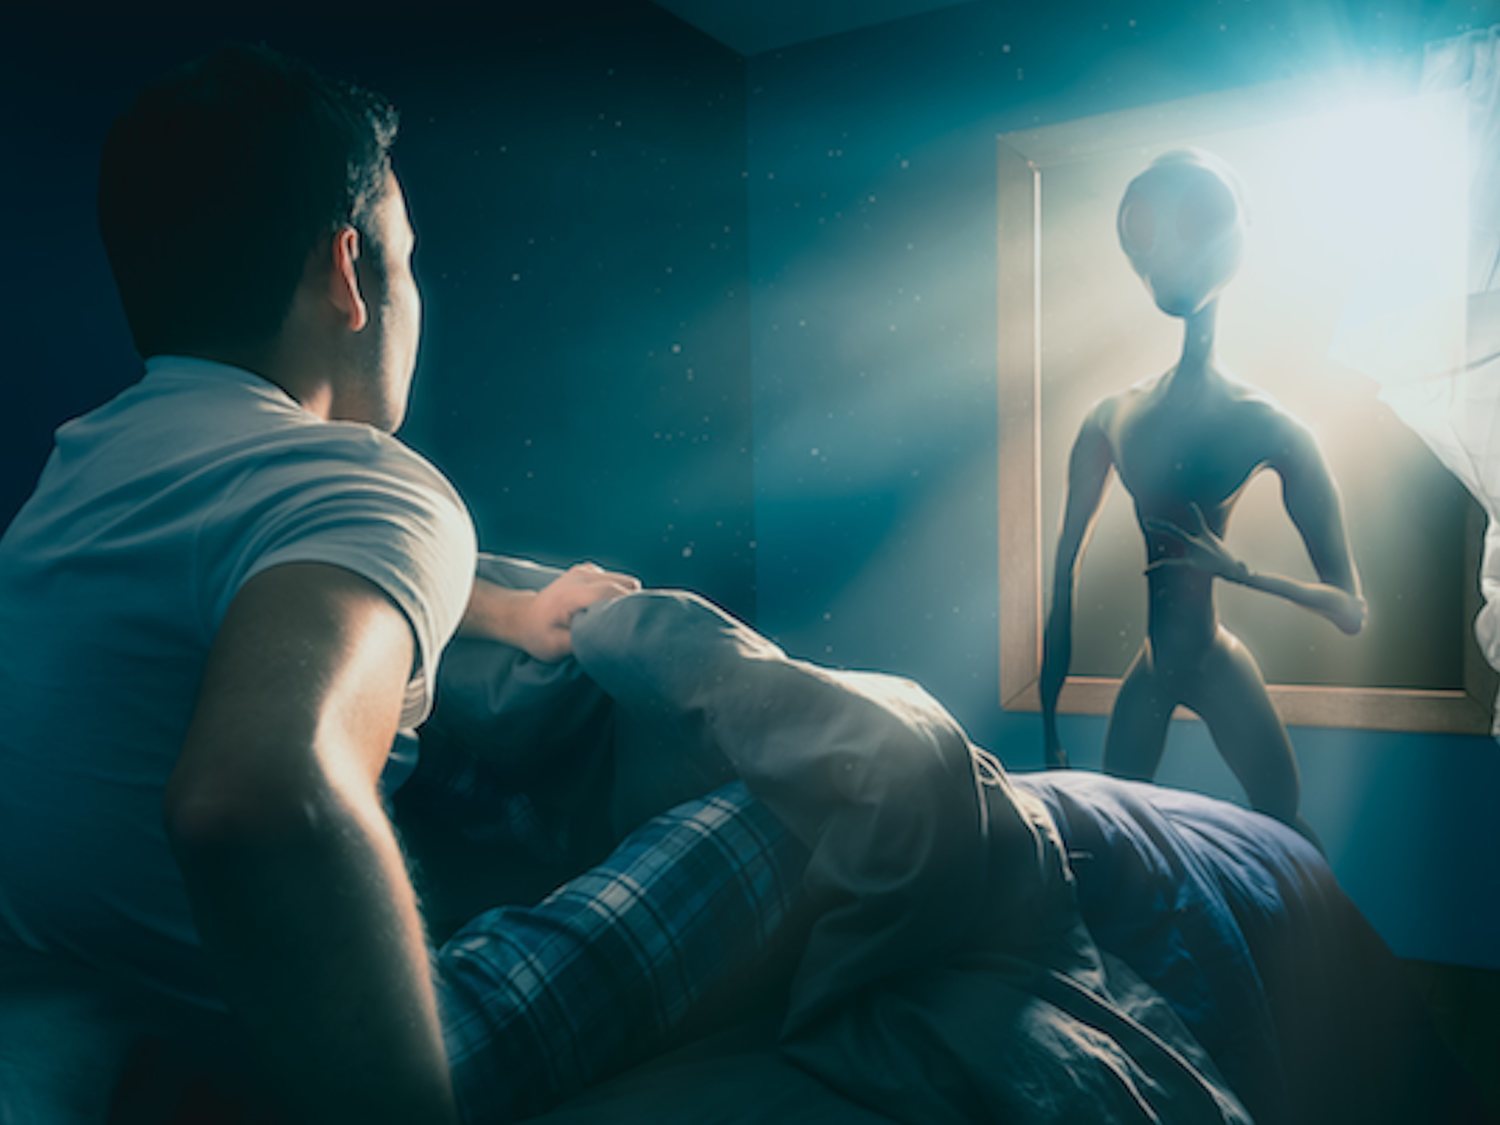 Las búsquedas de sexo con aliens se disparan en páginas porno y la culpa es del Área 51